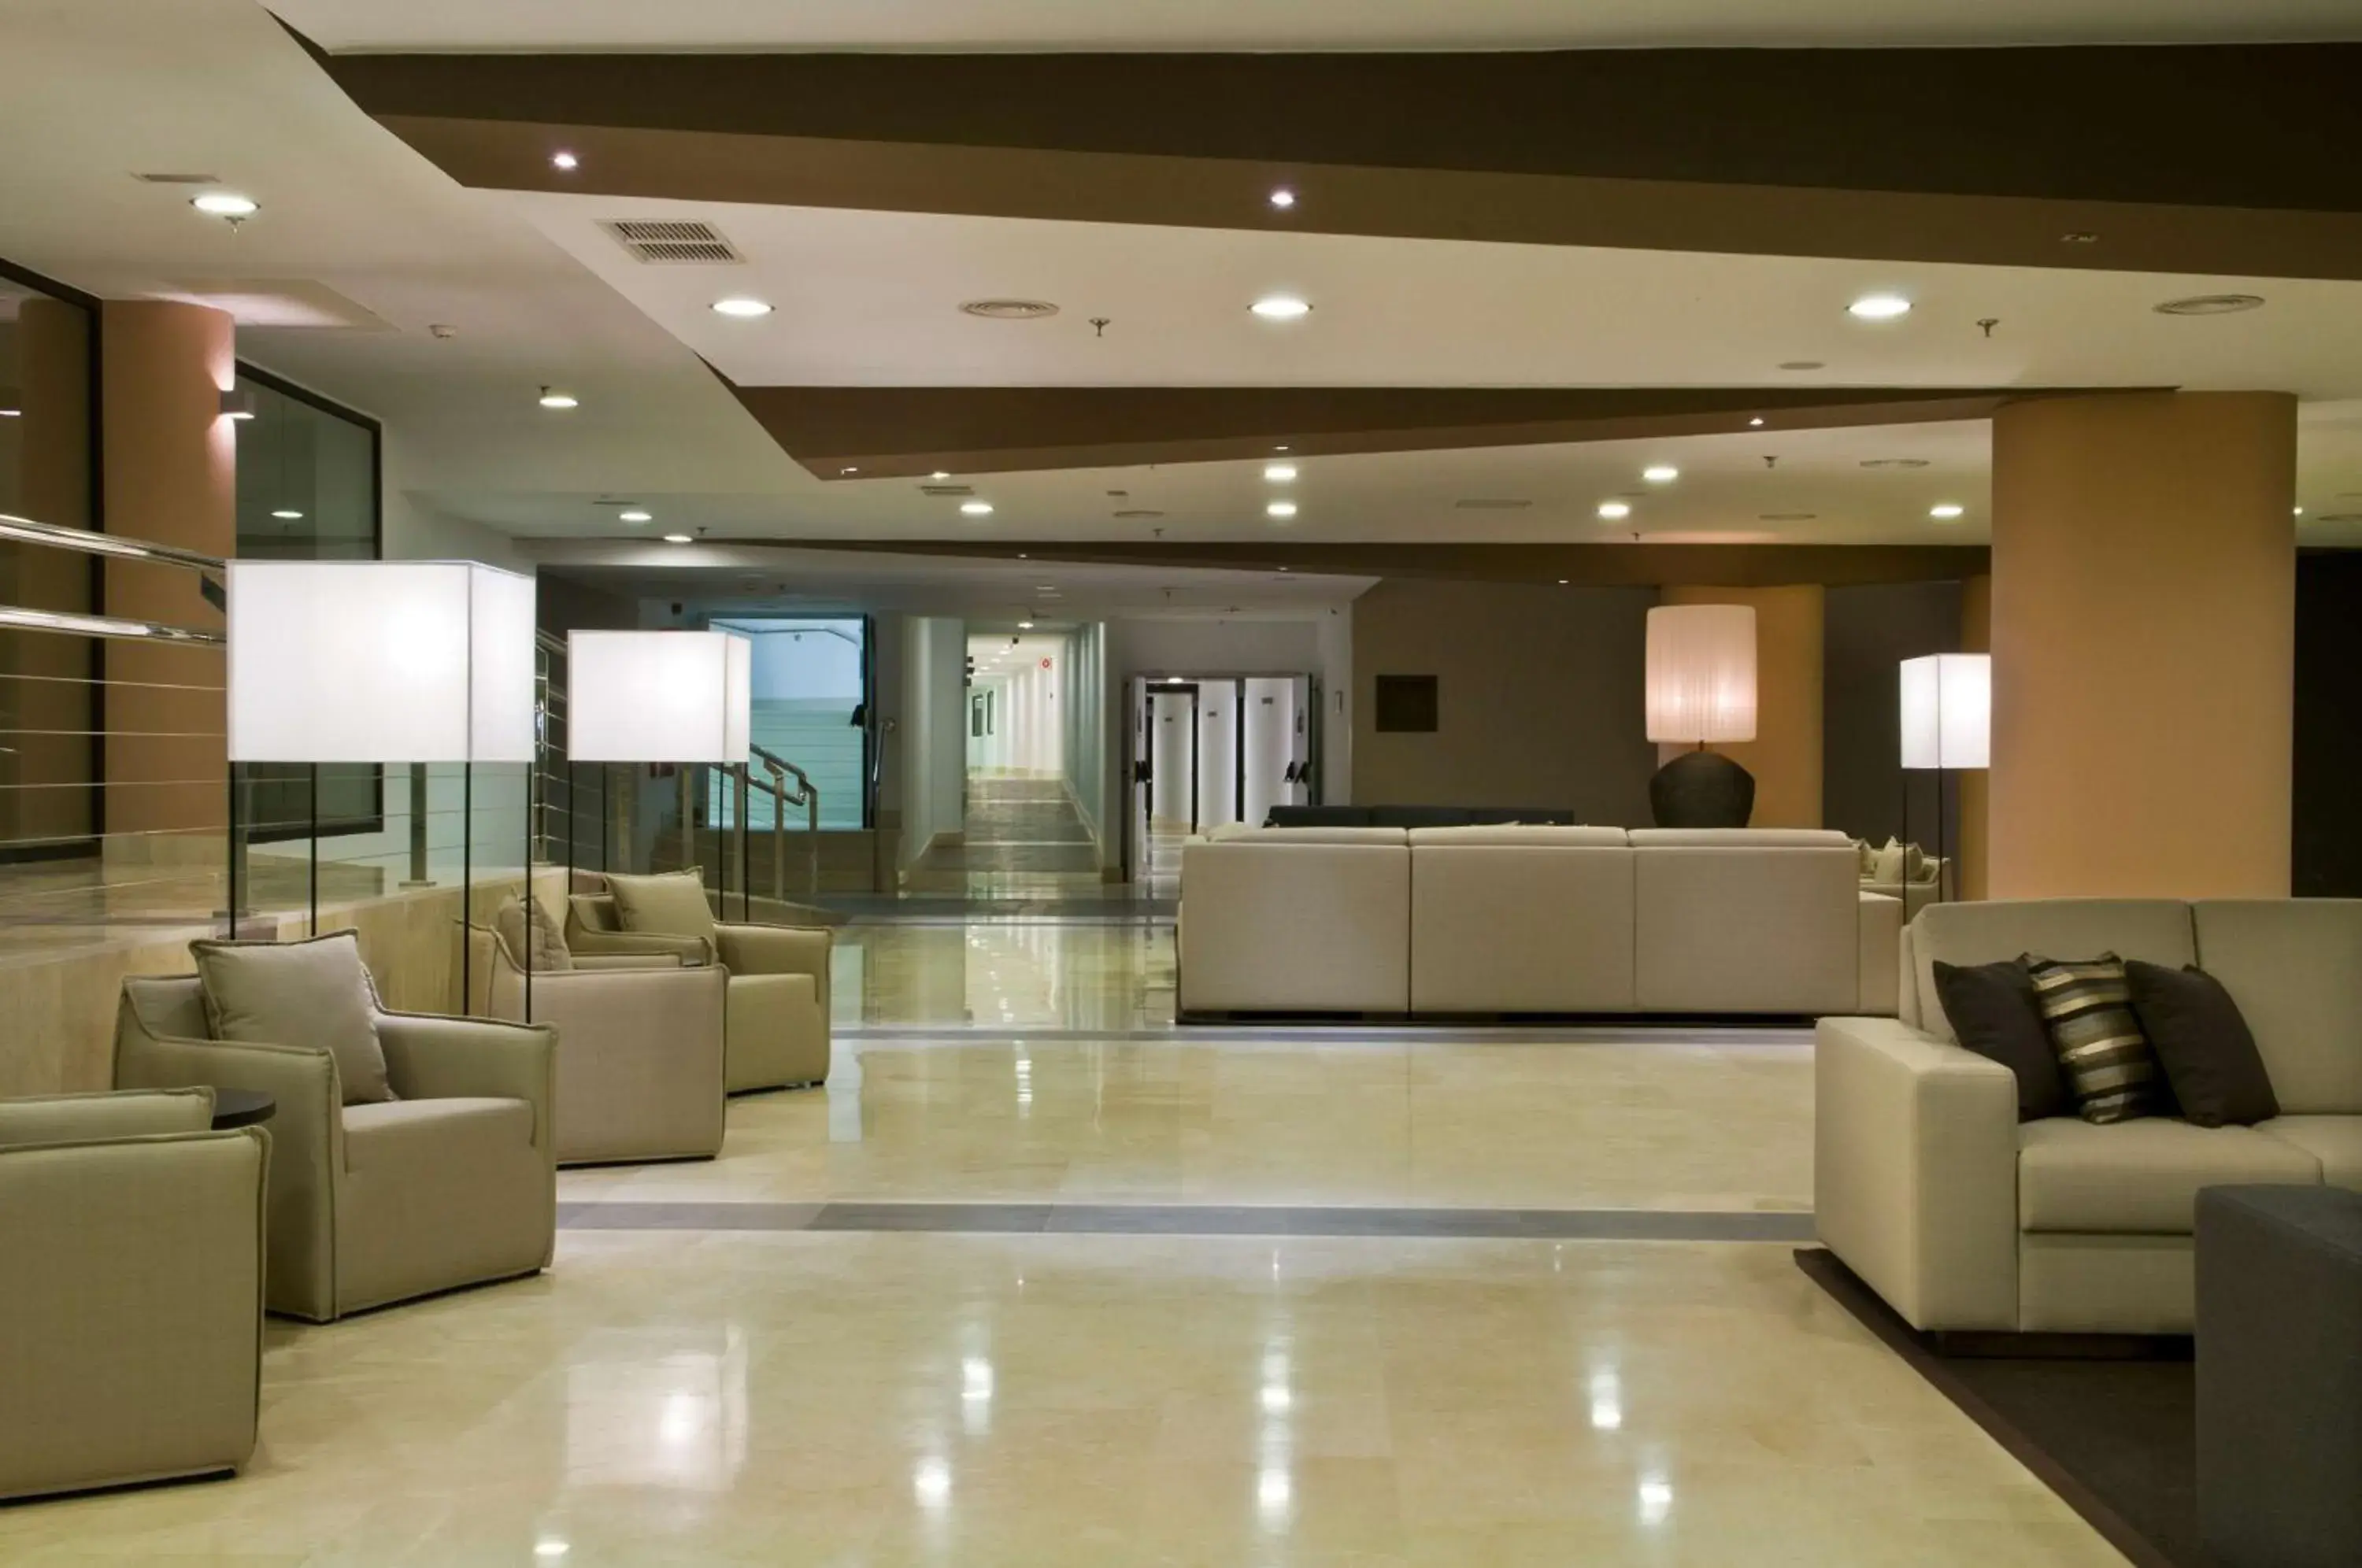 Lobby or reception, Lobby/Reception in Radisson Blu Resort Gran Canaria